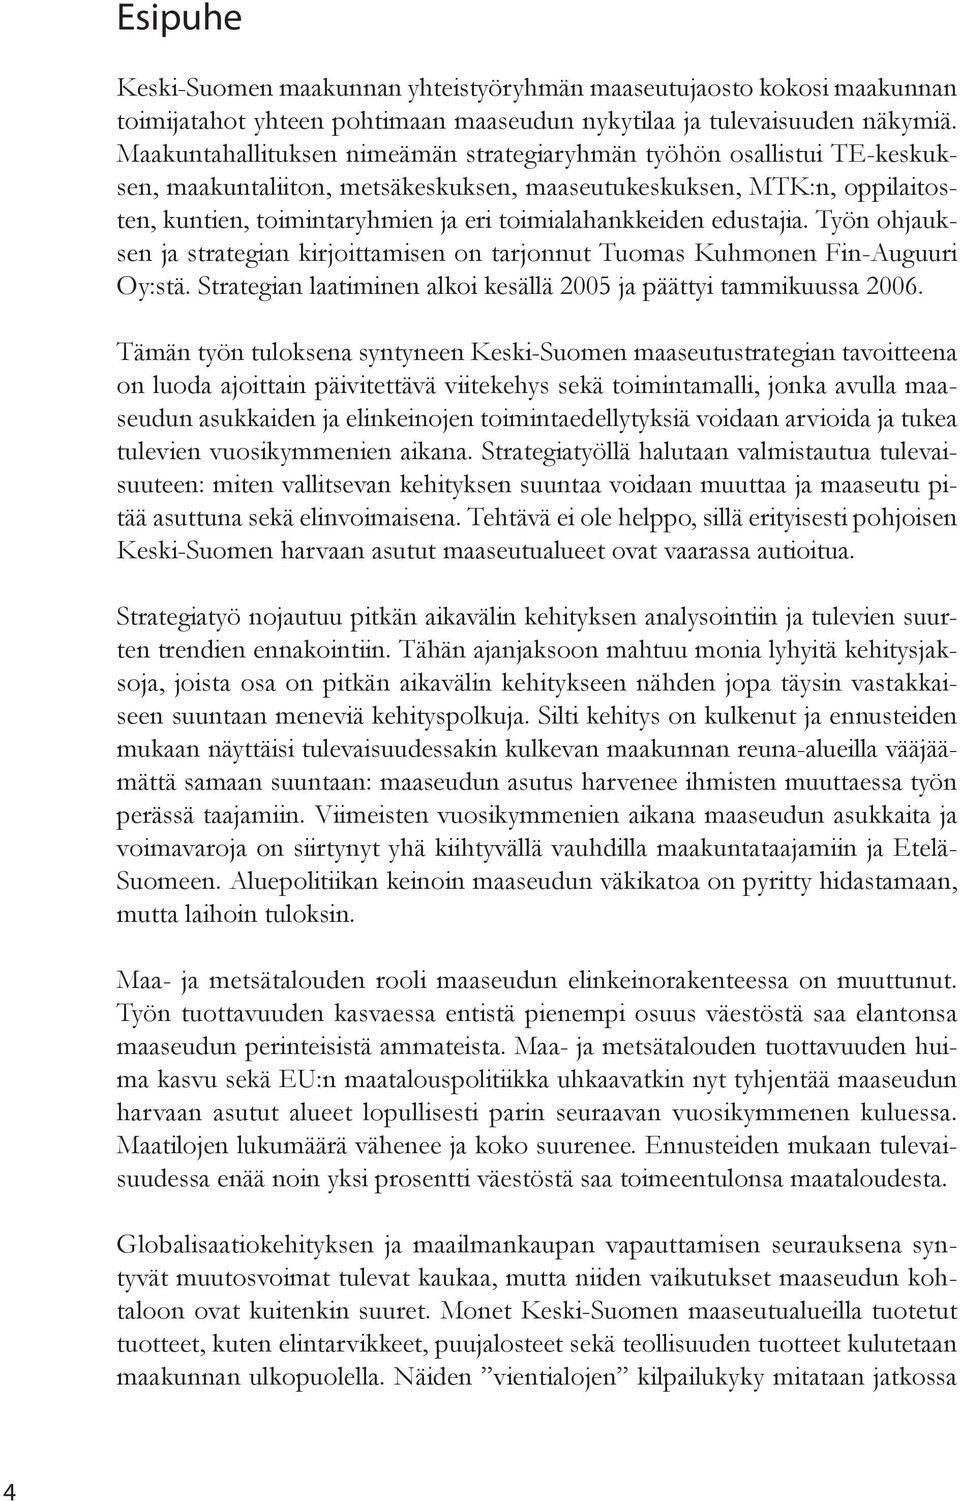 toimialahankkeiden edustajia. Työn ohjauksen ja strategian kirjoittamisen on tarjonnut Tuomas Kuhmonen Fin-Auguuri Oy:stä. Strategian laatiminen alkoi kesällä 2005 ja päättyi tammikuussa 2006.